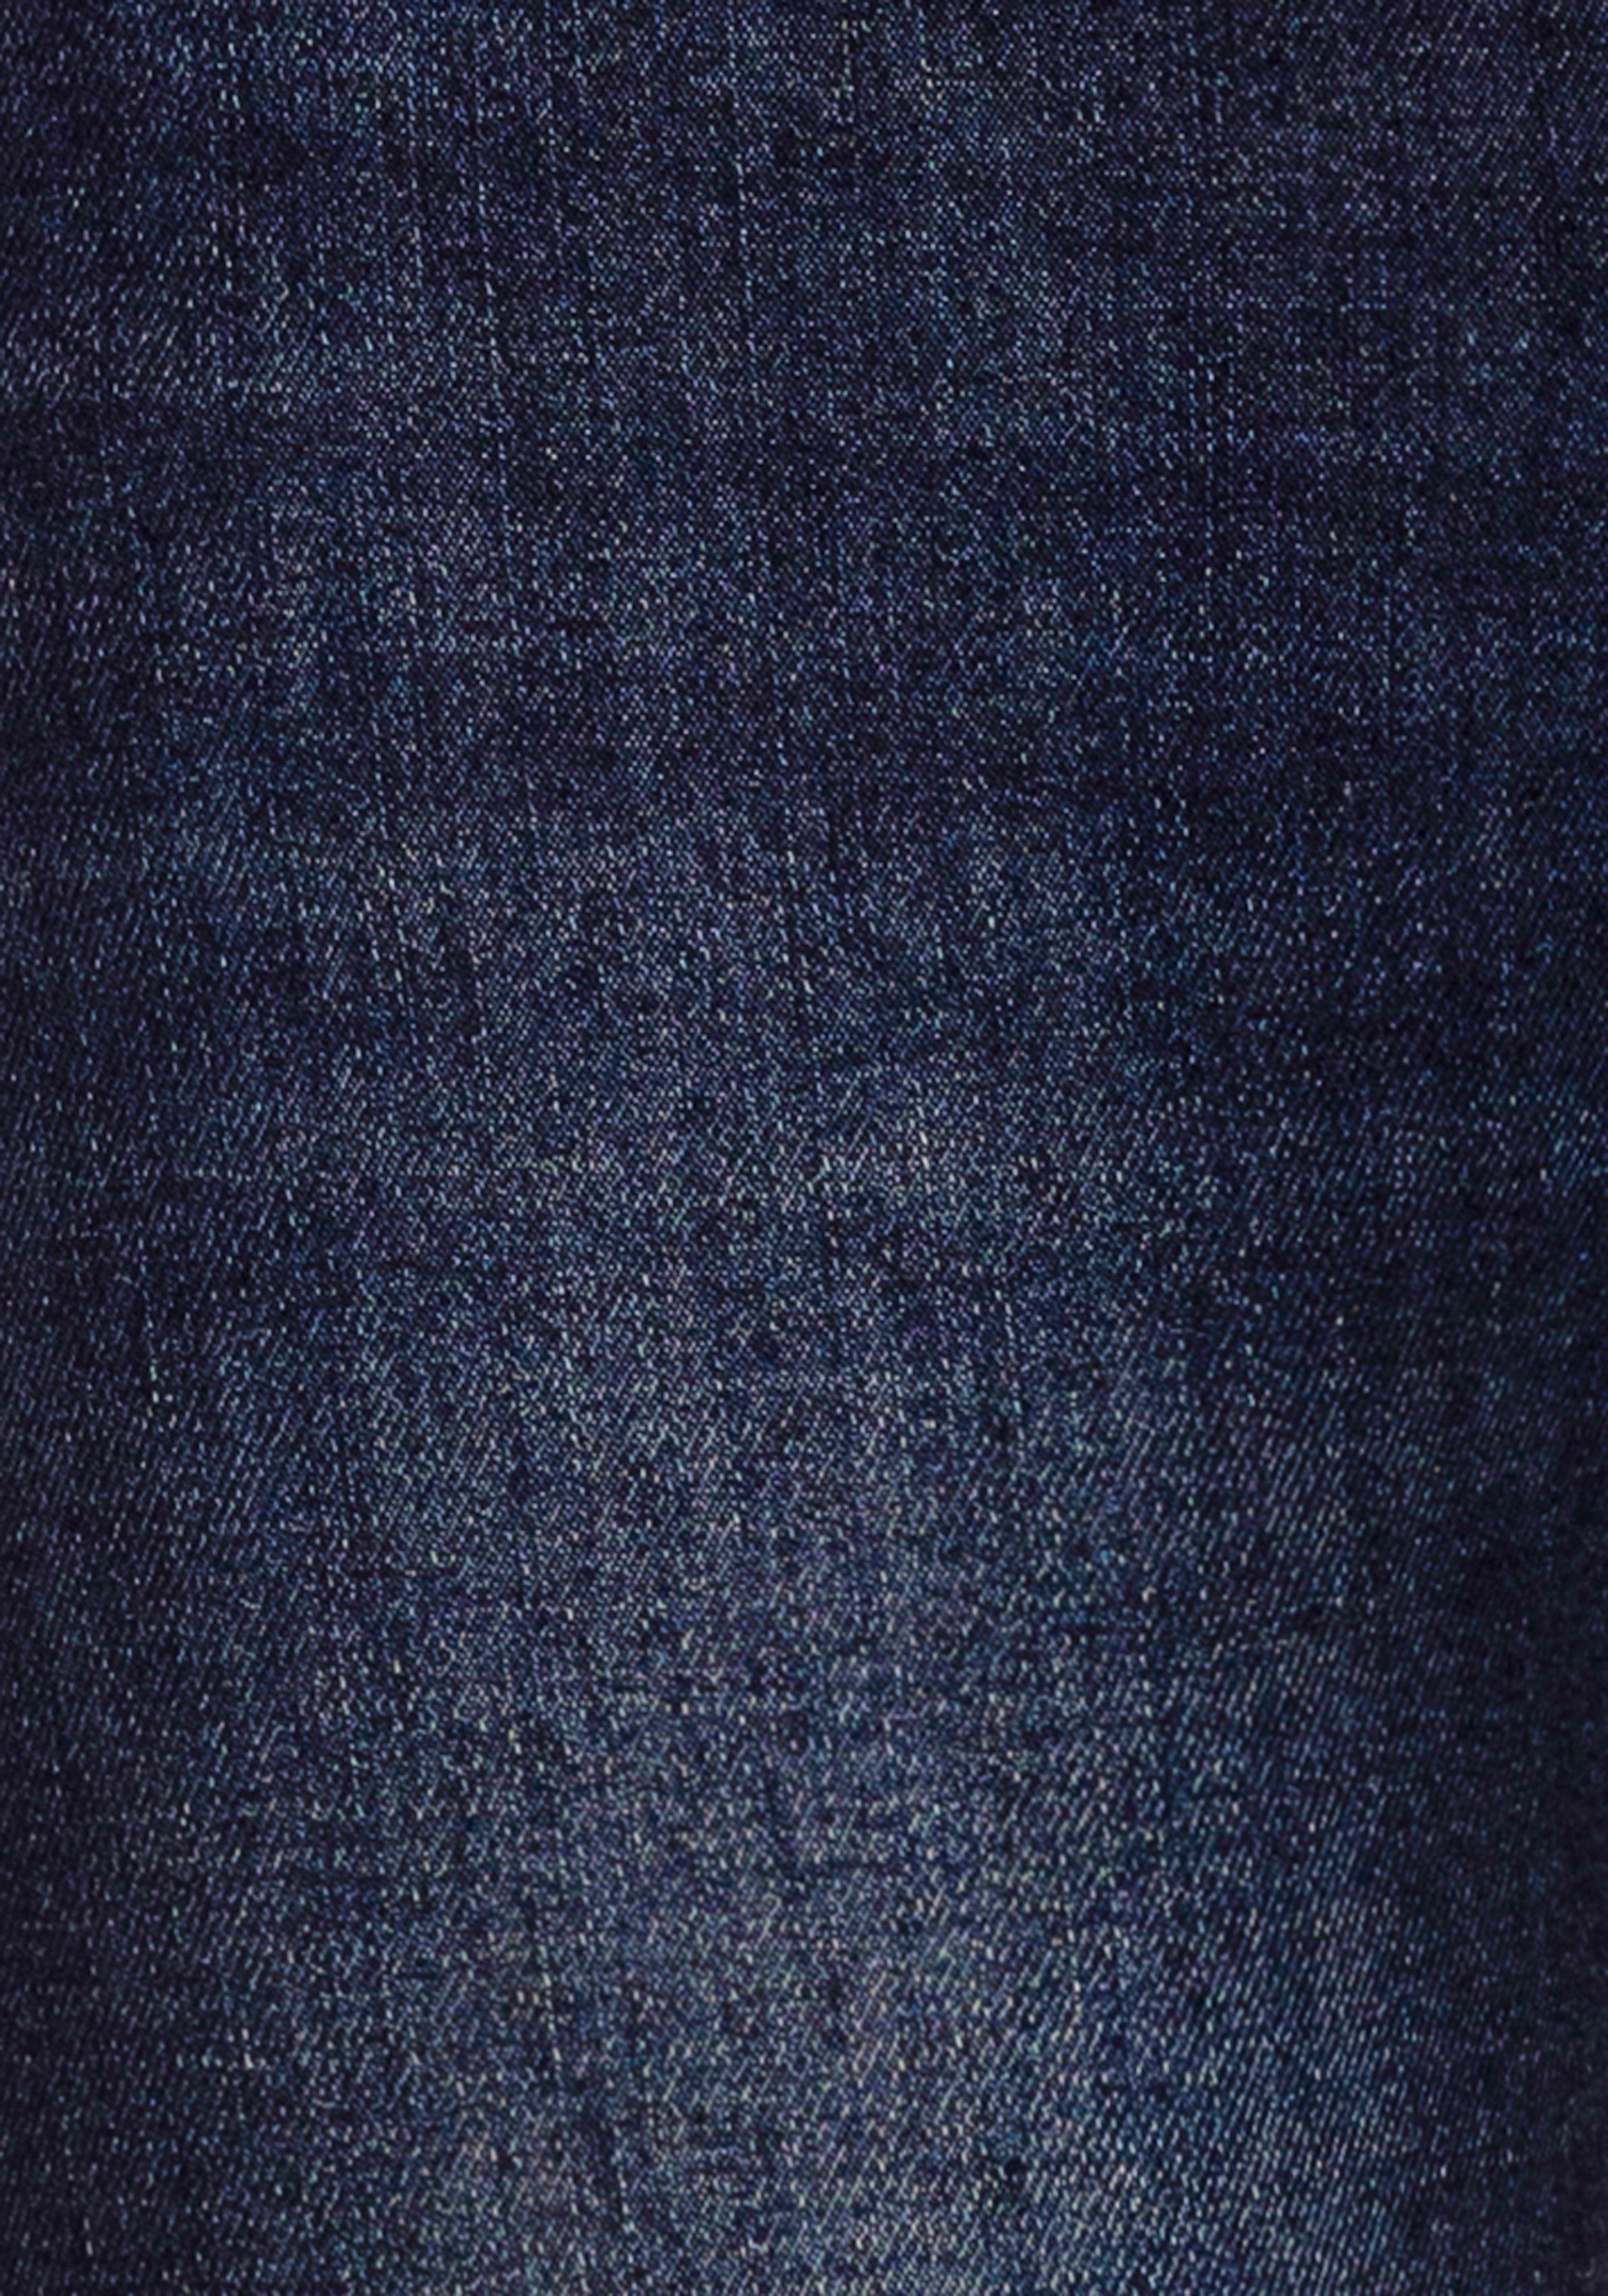 Wash djunaHS dark ökologische, wassersparende H.I.S blue durch used 5-Pocket-Jeans Produktion Ozon